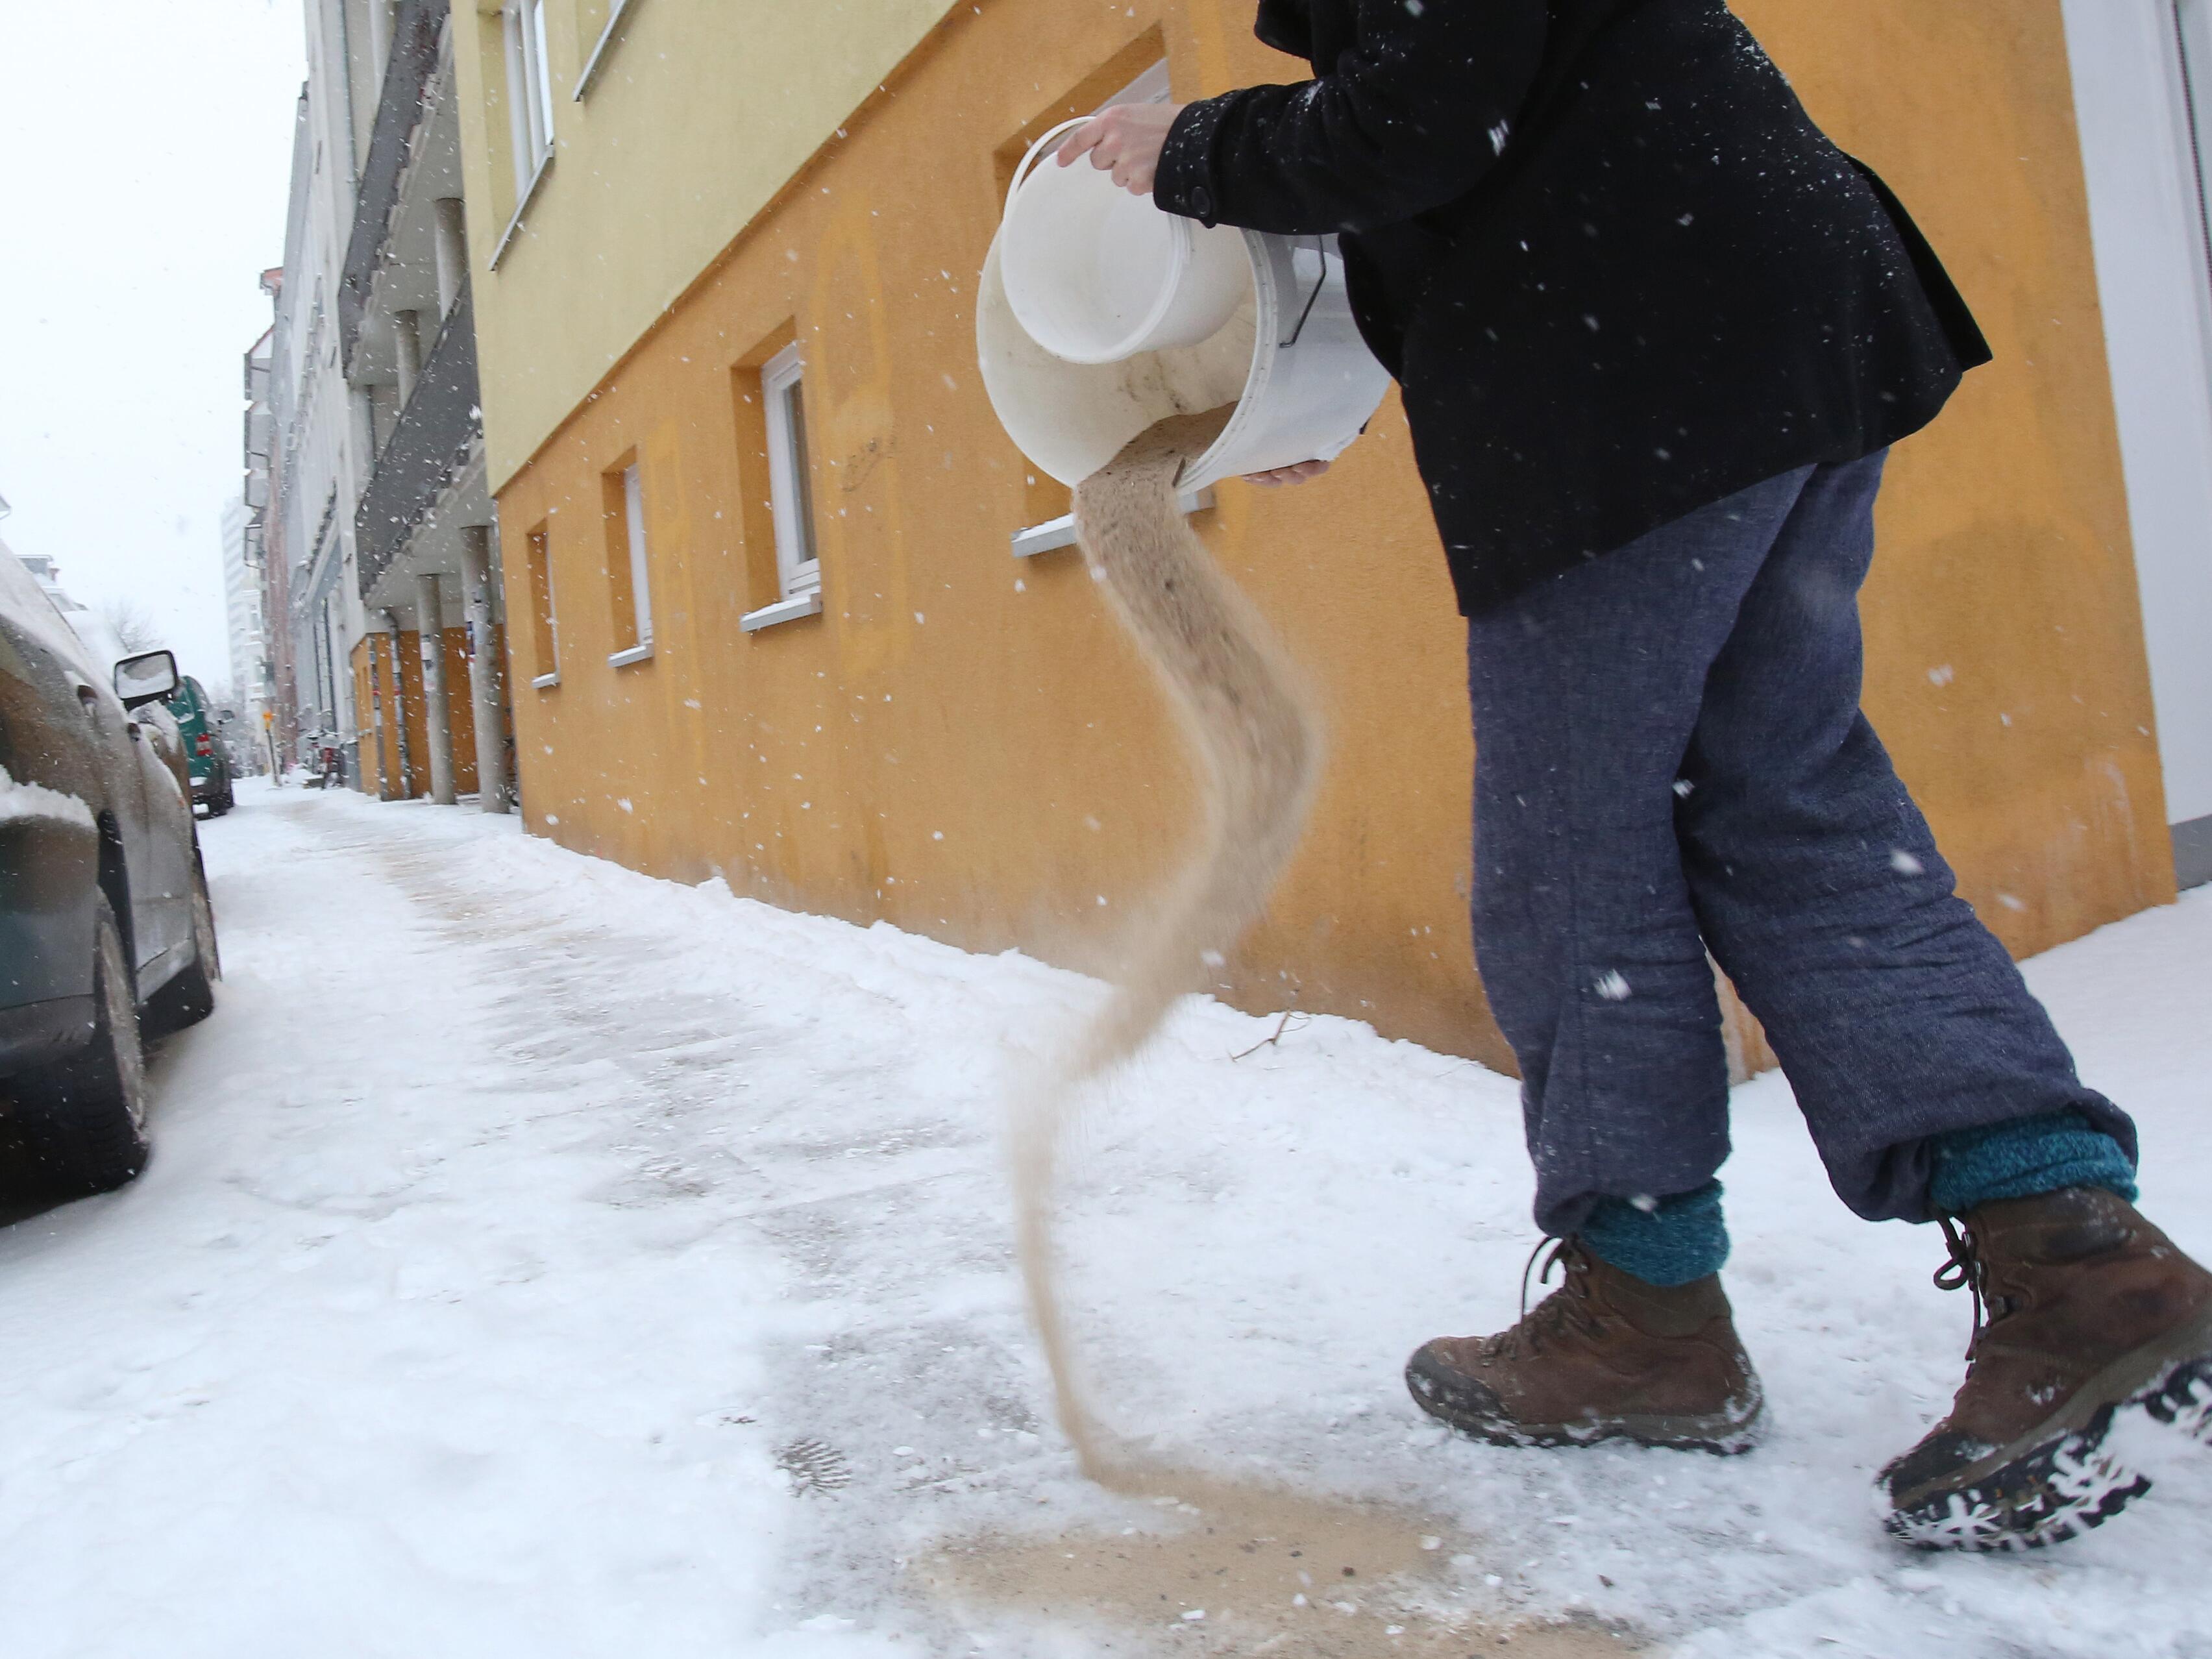 Winterdienst: Wann Mieter und Eigentümer Schnee schippen müssen